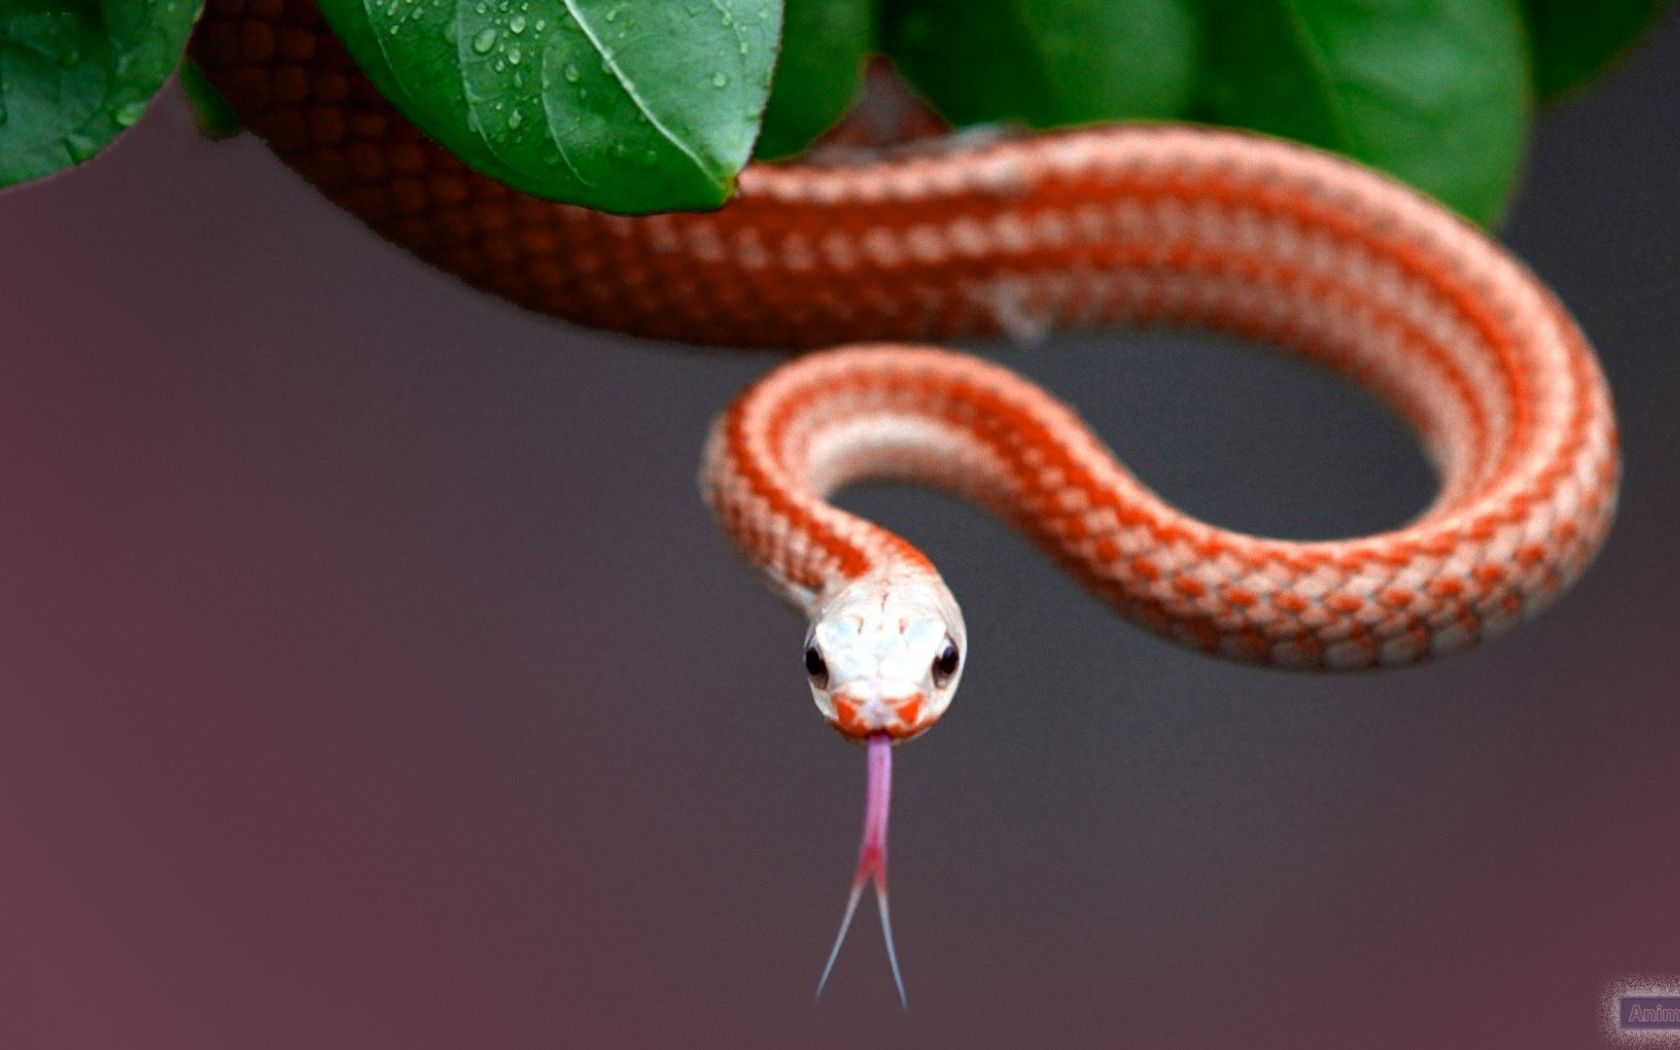 Free download snake wallpaper for desktop snake wallpaper snakes